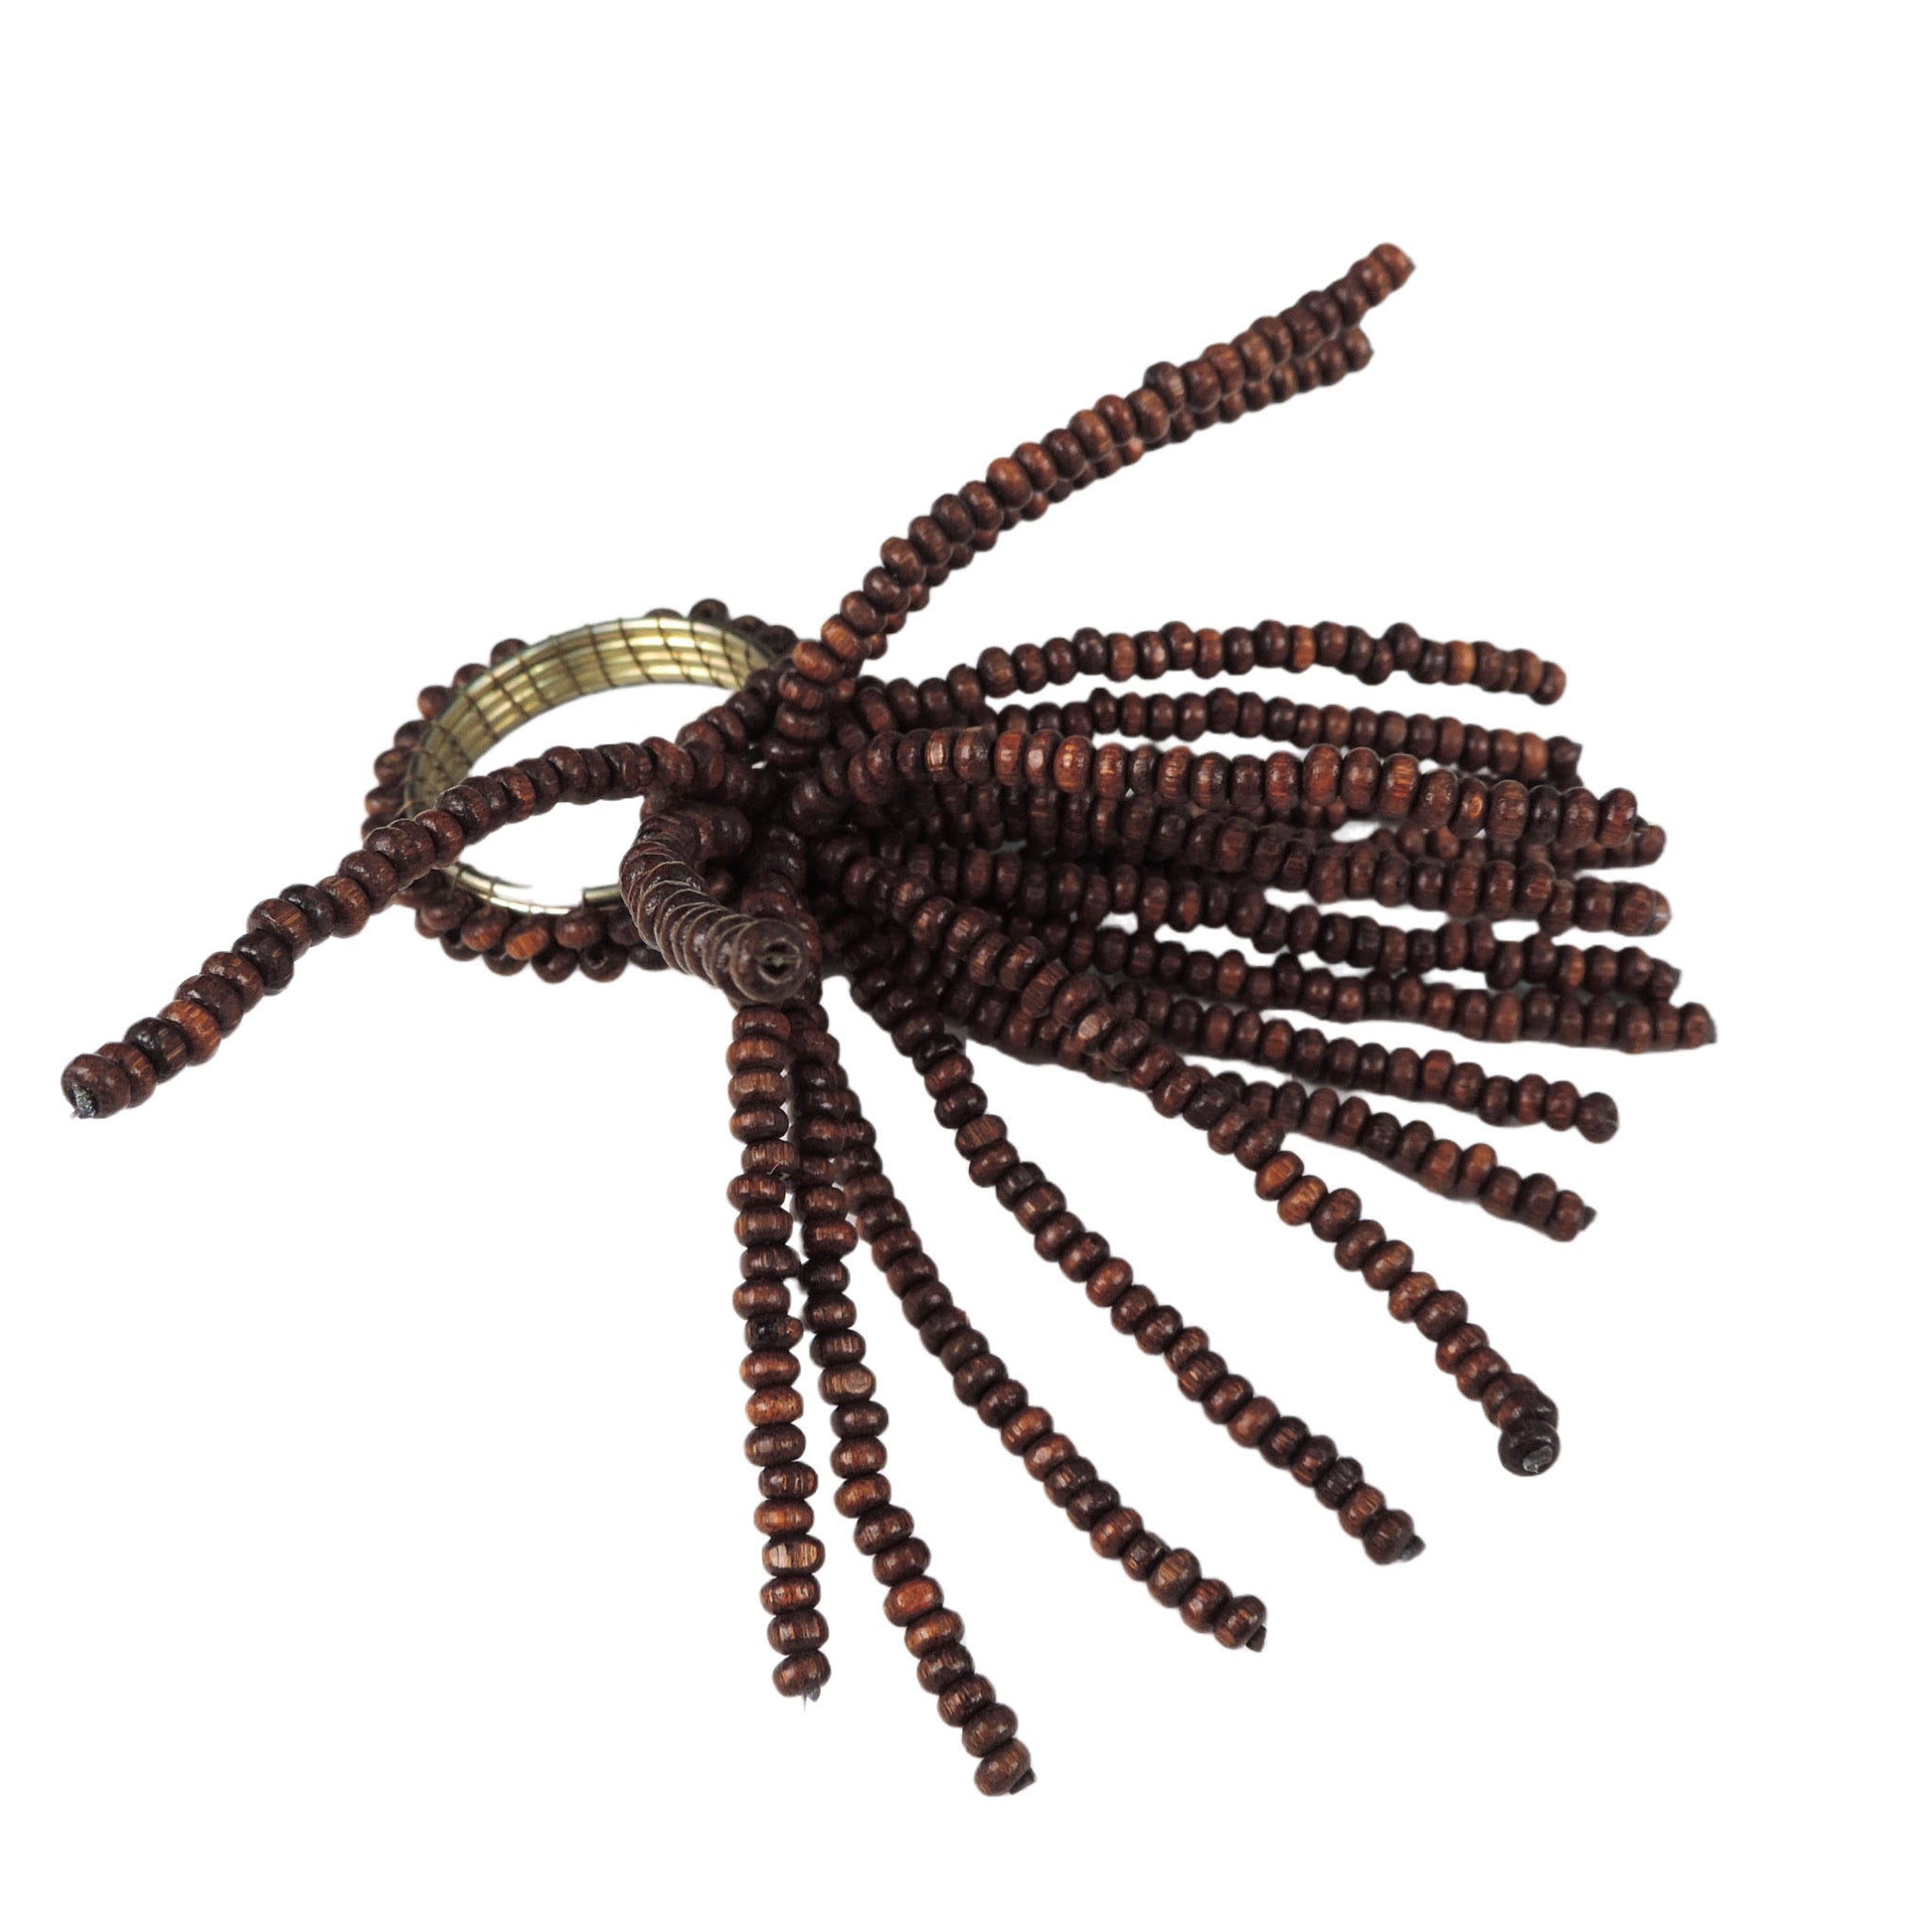 Tasseled Wooden Bead Napkin Ring in Dark Brown, Set of 4